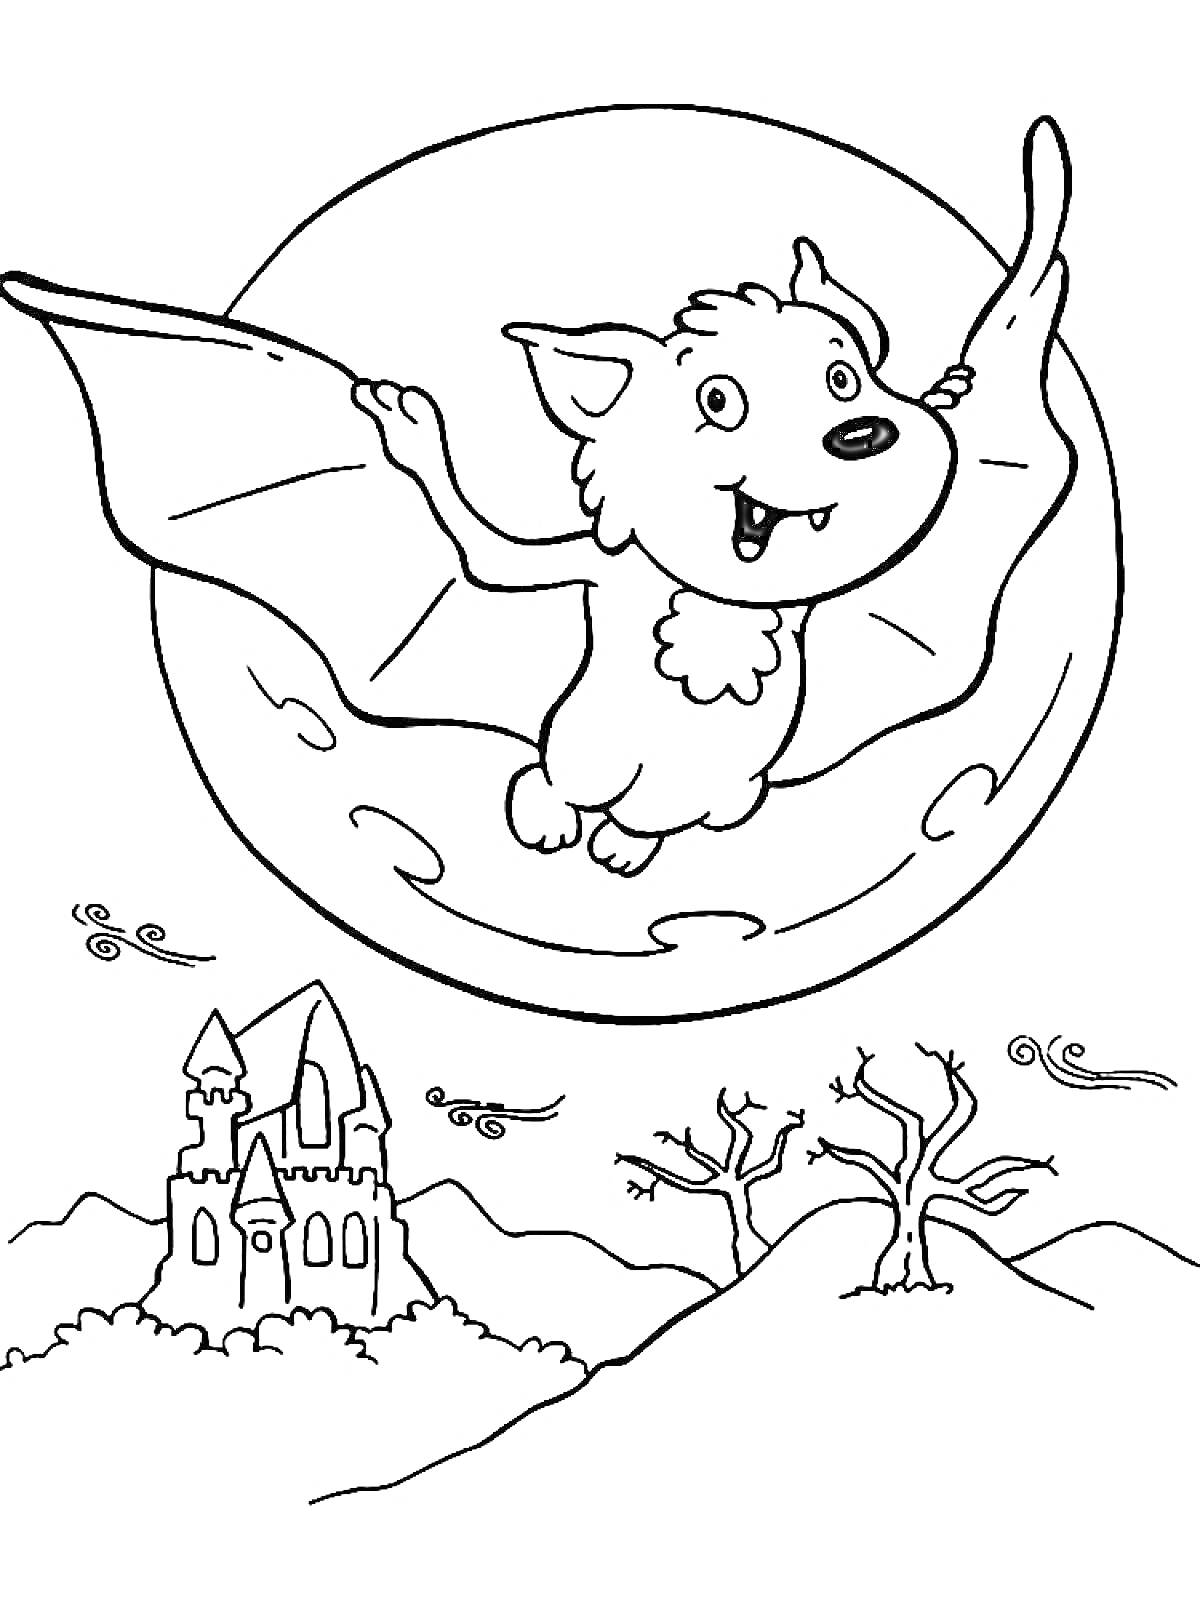 Летучая мышь вампир на фоне полной луны и привидений с замком и деревьями на земле